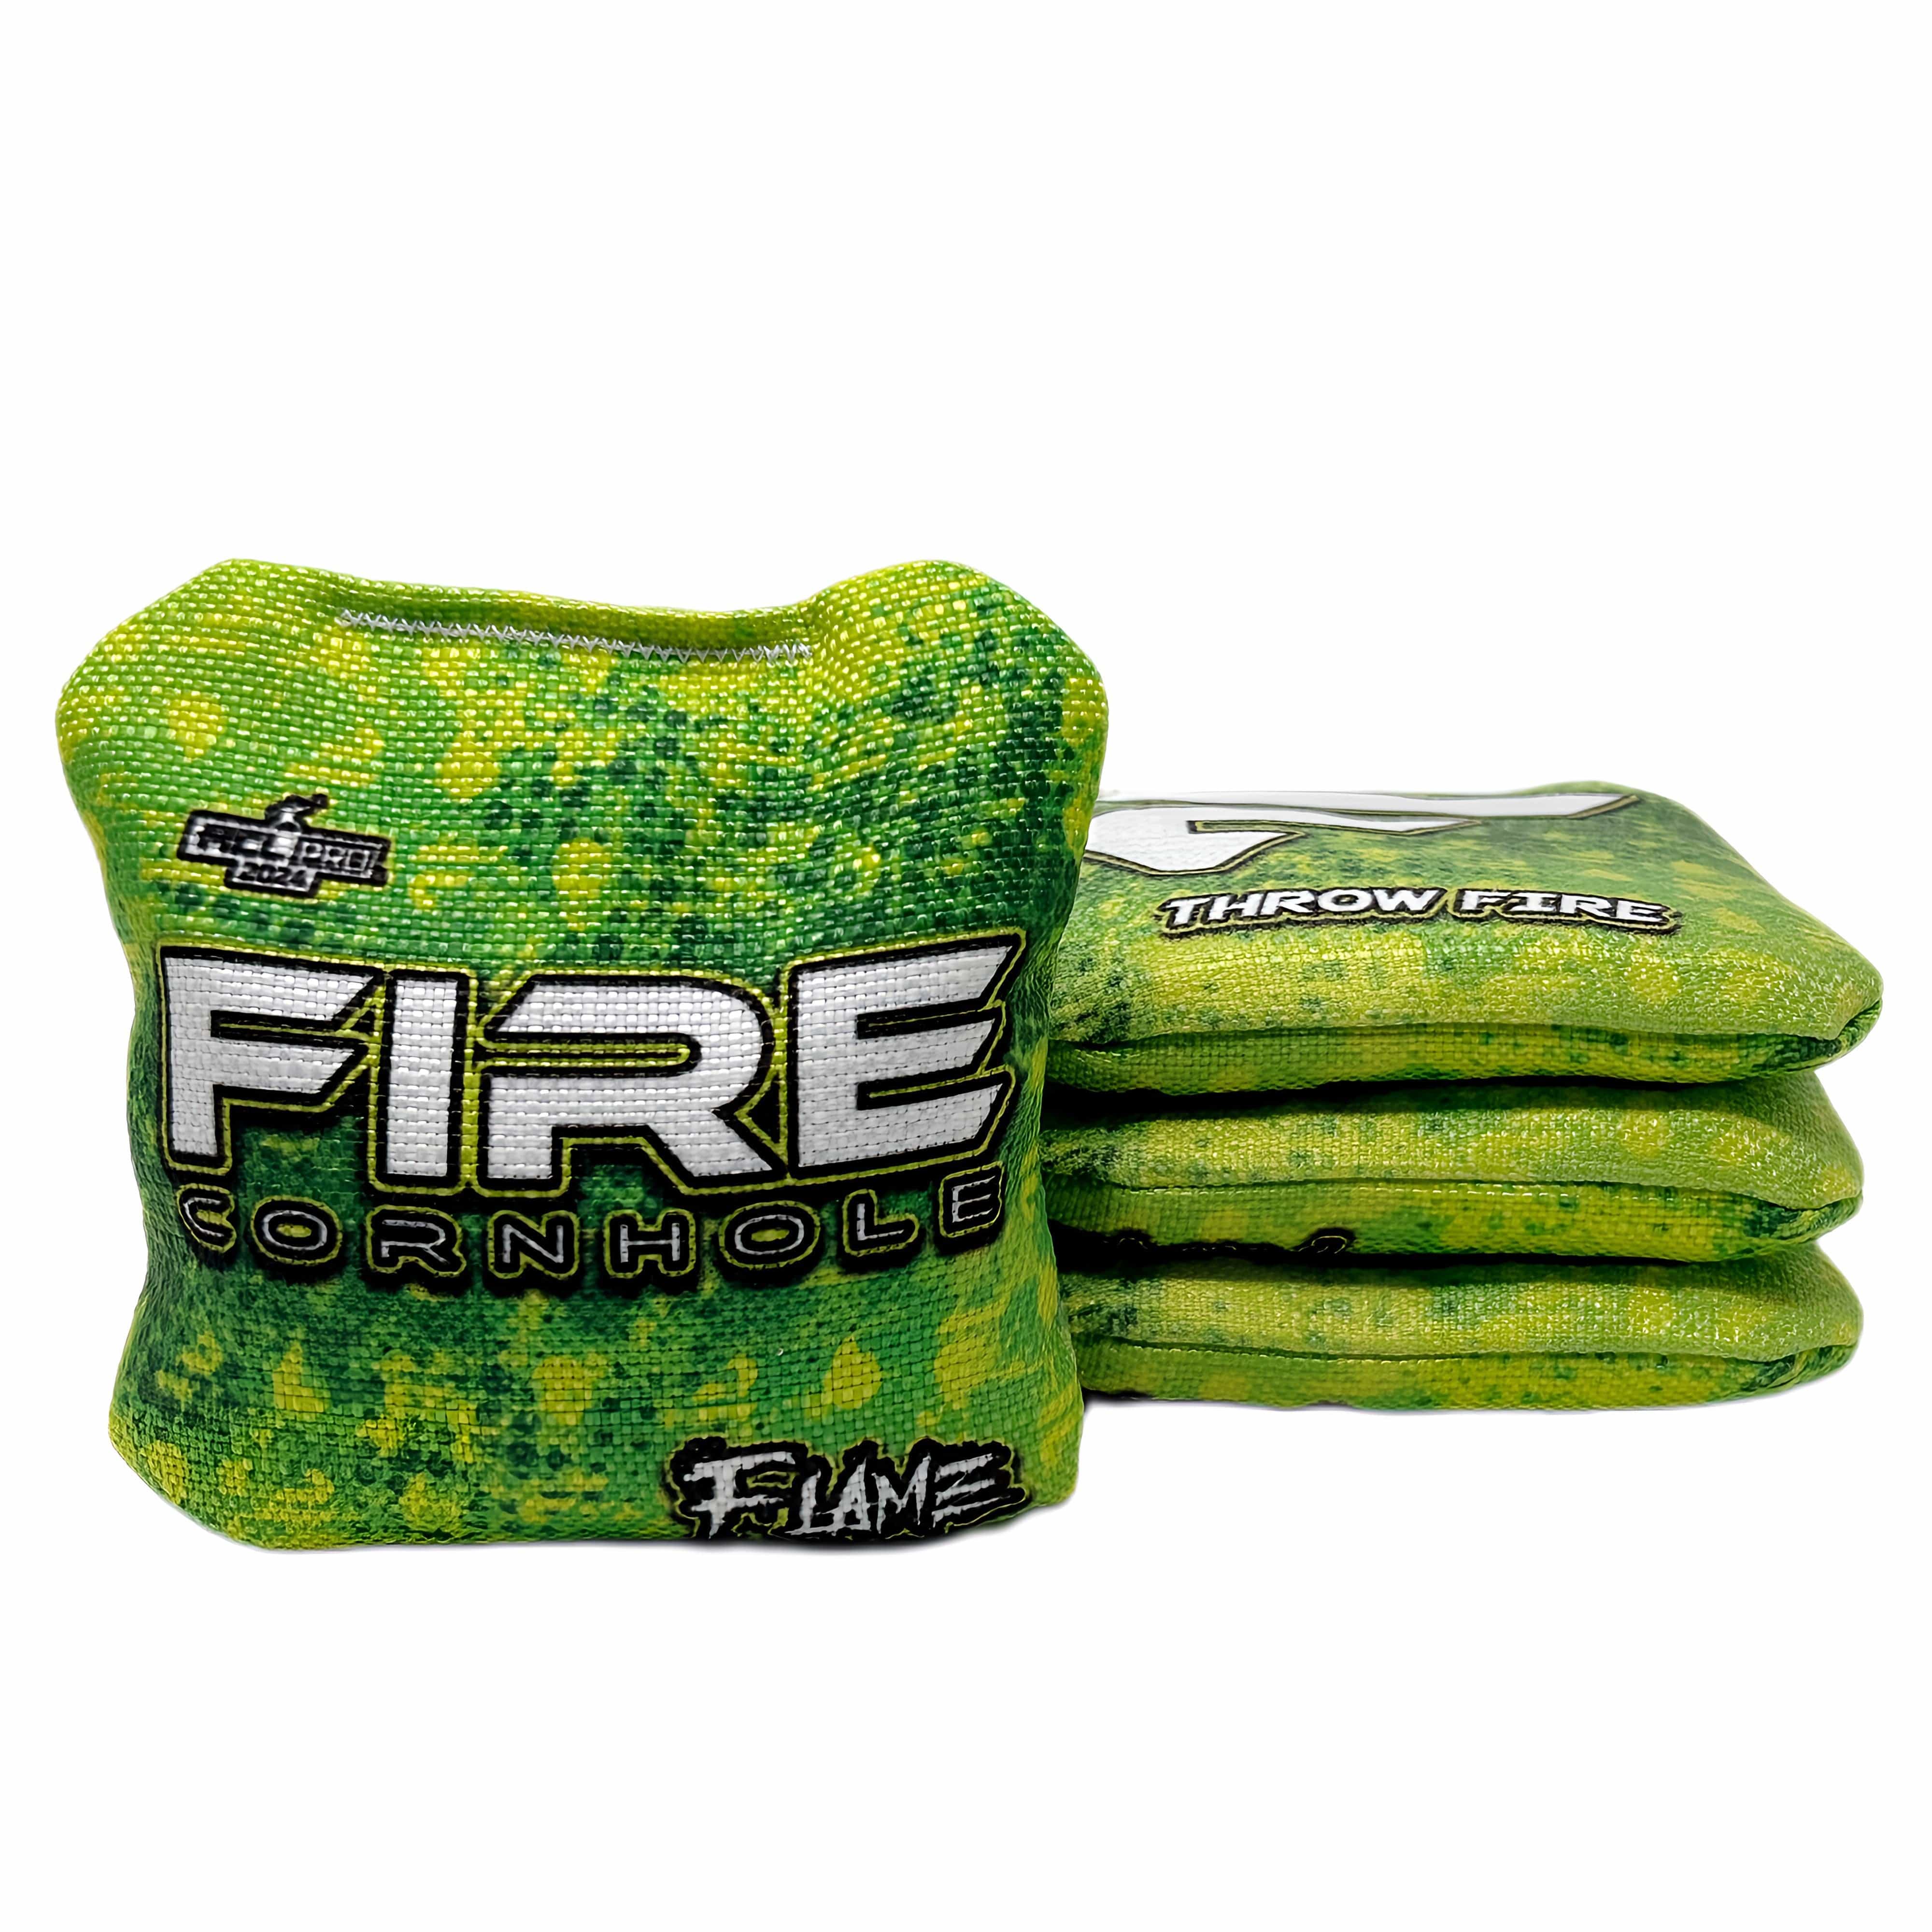 Fire Cornhole 2024 Fire Flame Cornhole Bags - Set of 4